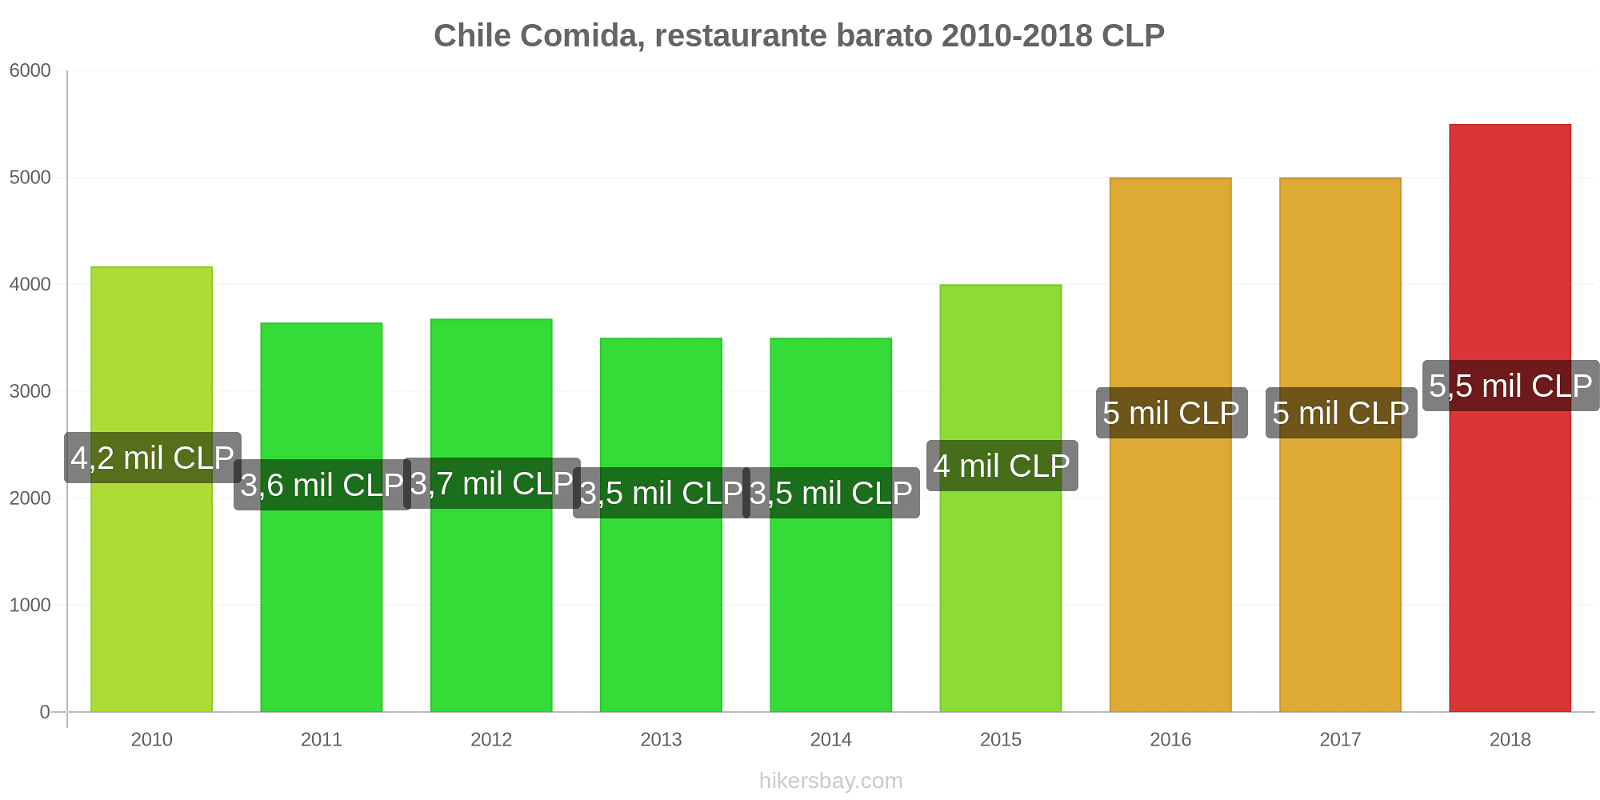 Chile cambios de precios Comida en un restaurante económico hikersbay.com